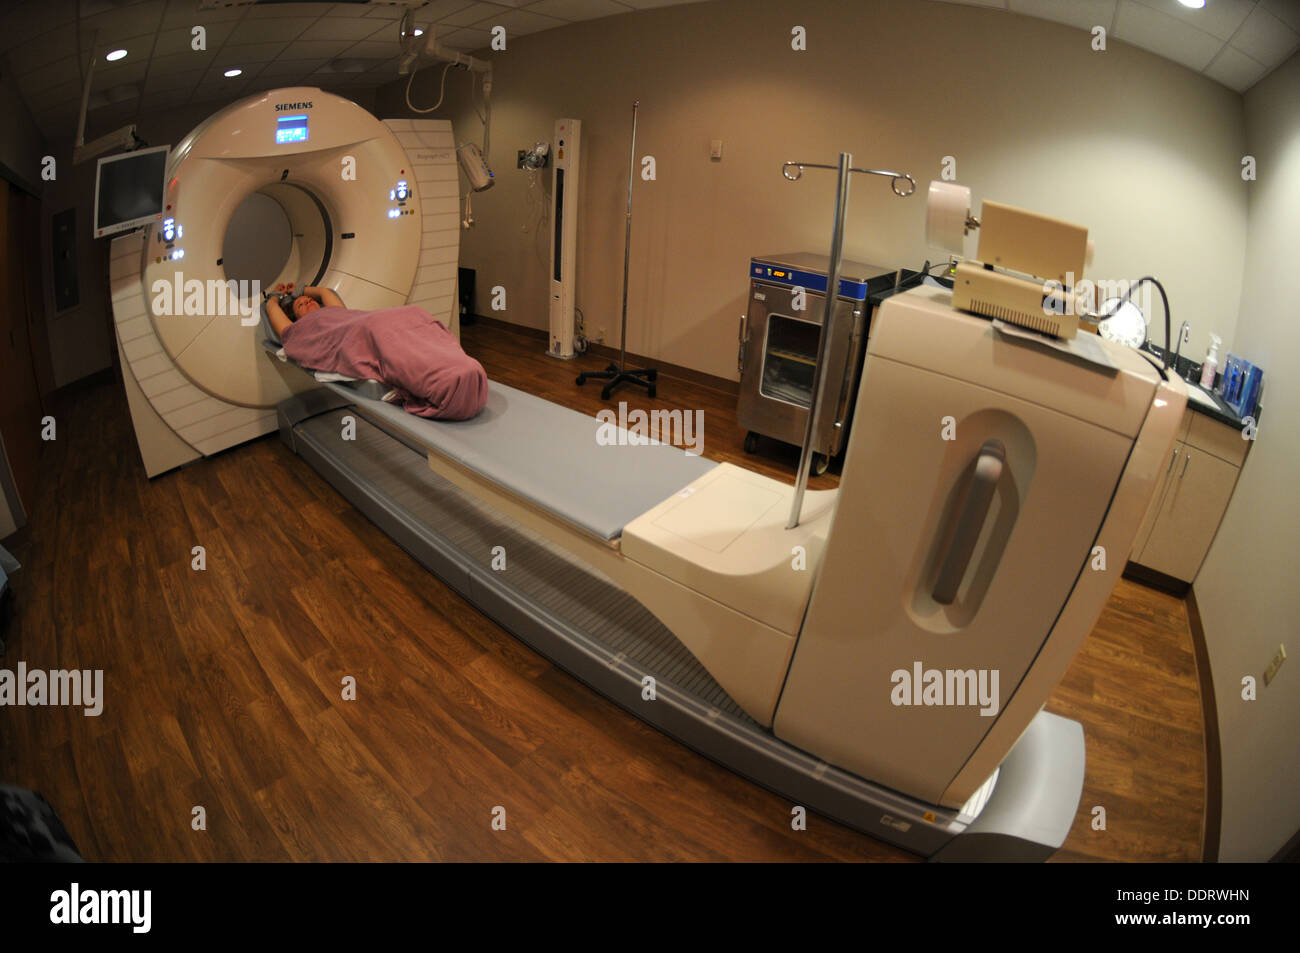 Deanna Eichenlaud, ein Patient im Naval Medical Center-Portsmouth, erfährt eine PET-Untersuchung in des medizinischen Zentrums Nuklearmedizin Klinik. Der PET/CT-Scanner ist in erster Linie für Krebs Auswertungen verwendet. Stockfoto